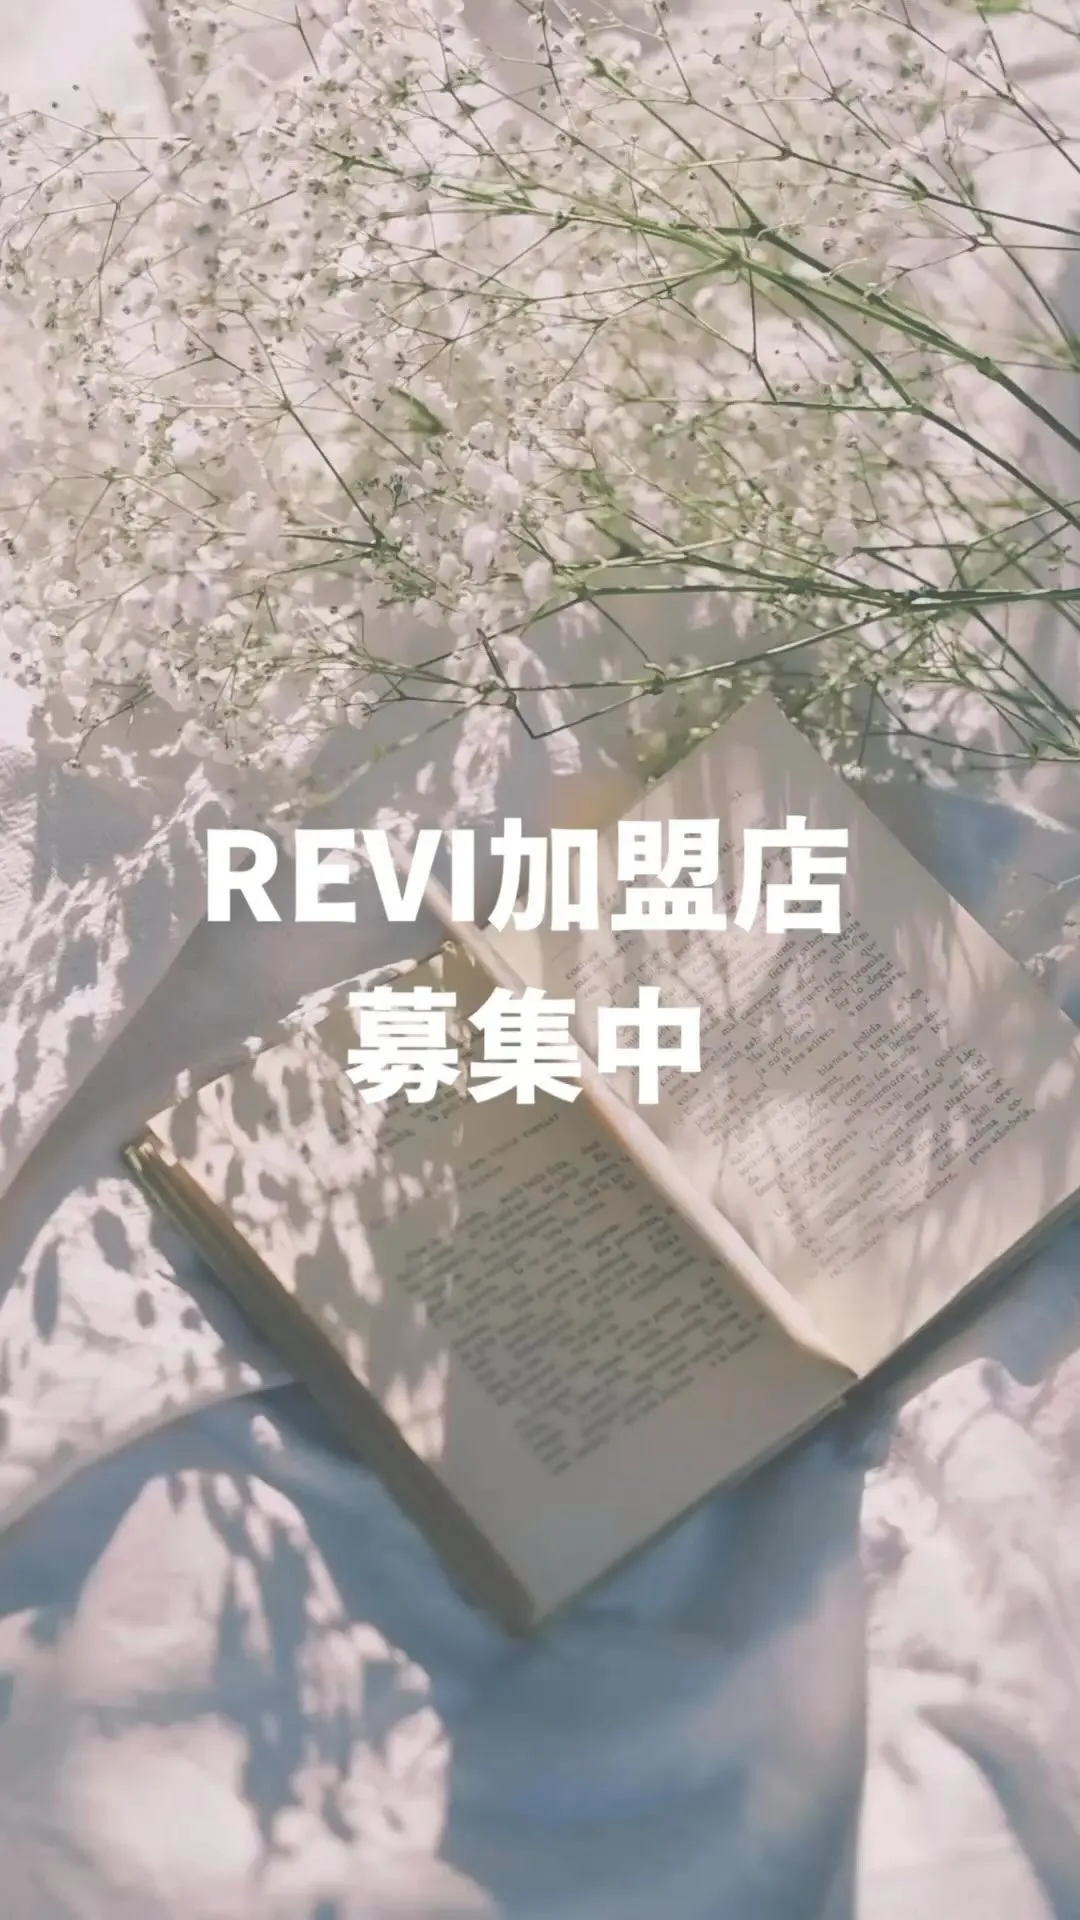 【最新】REVI加盟店募集&導入説明会受付中